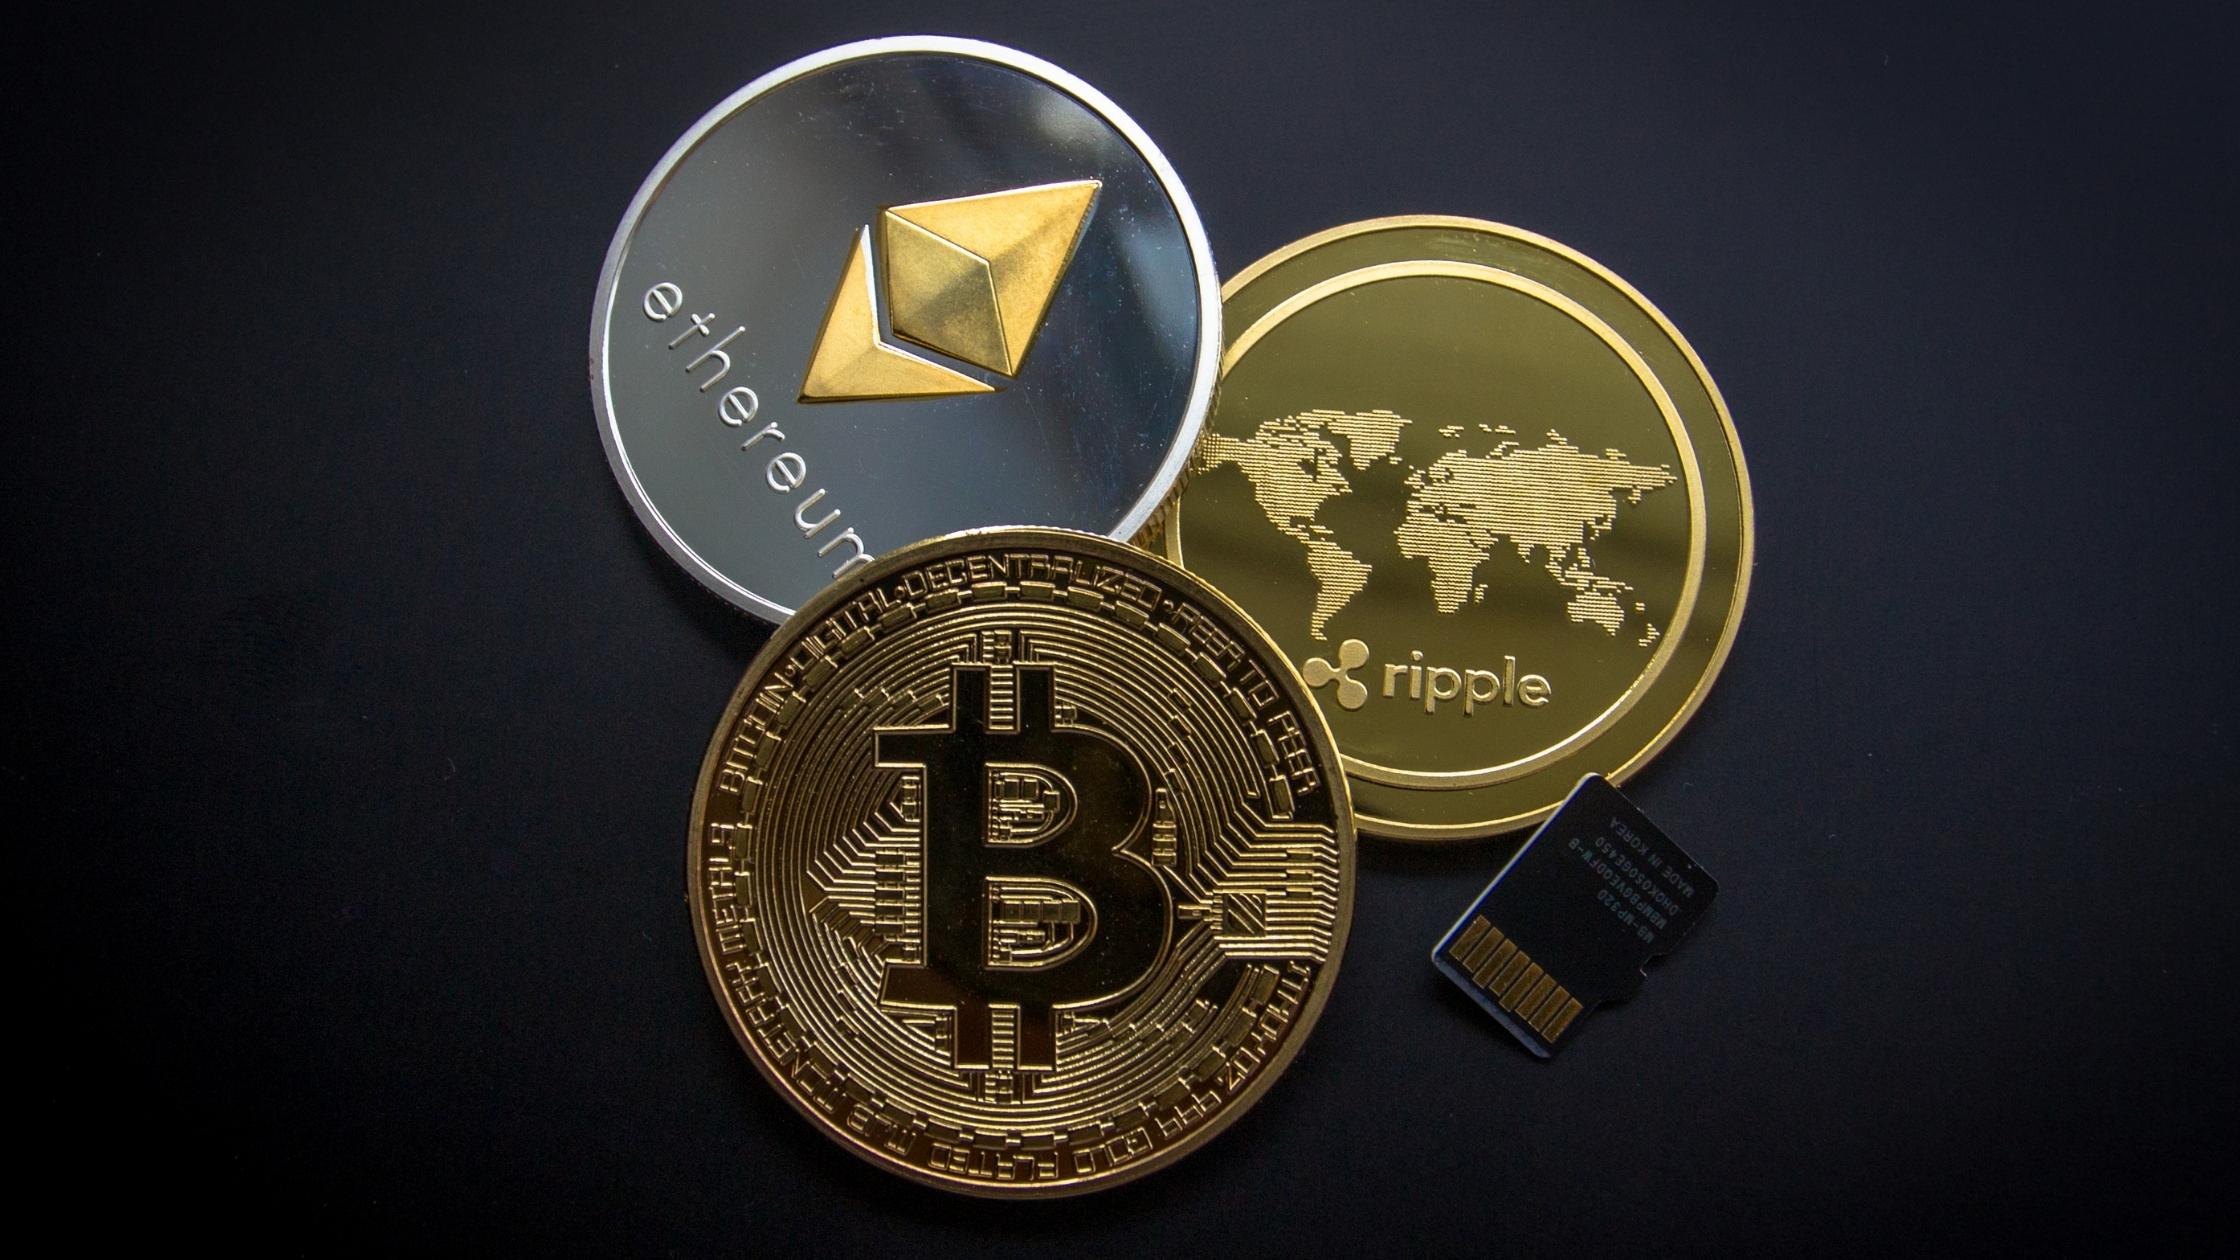 kryptowährung investieren schweiz invest in ethereum or bitcoin reddit